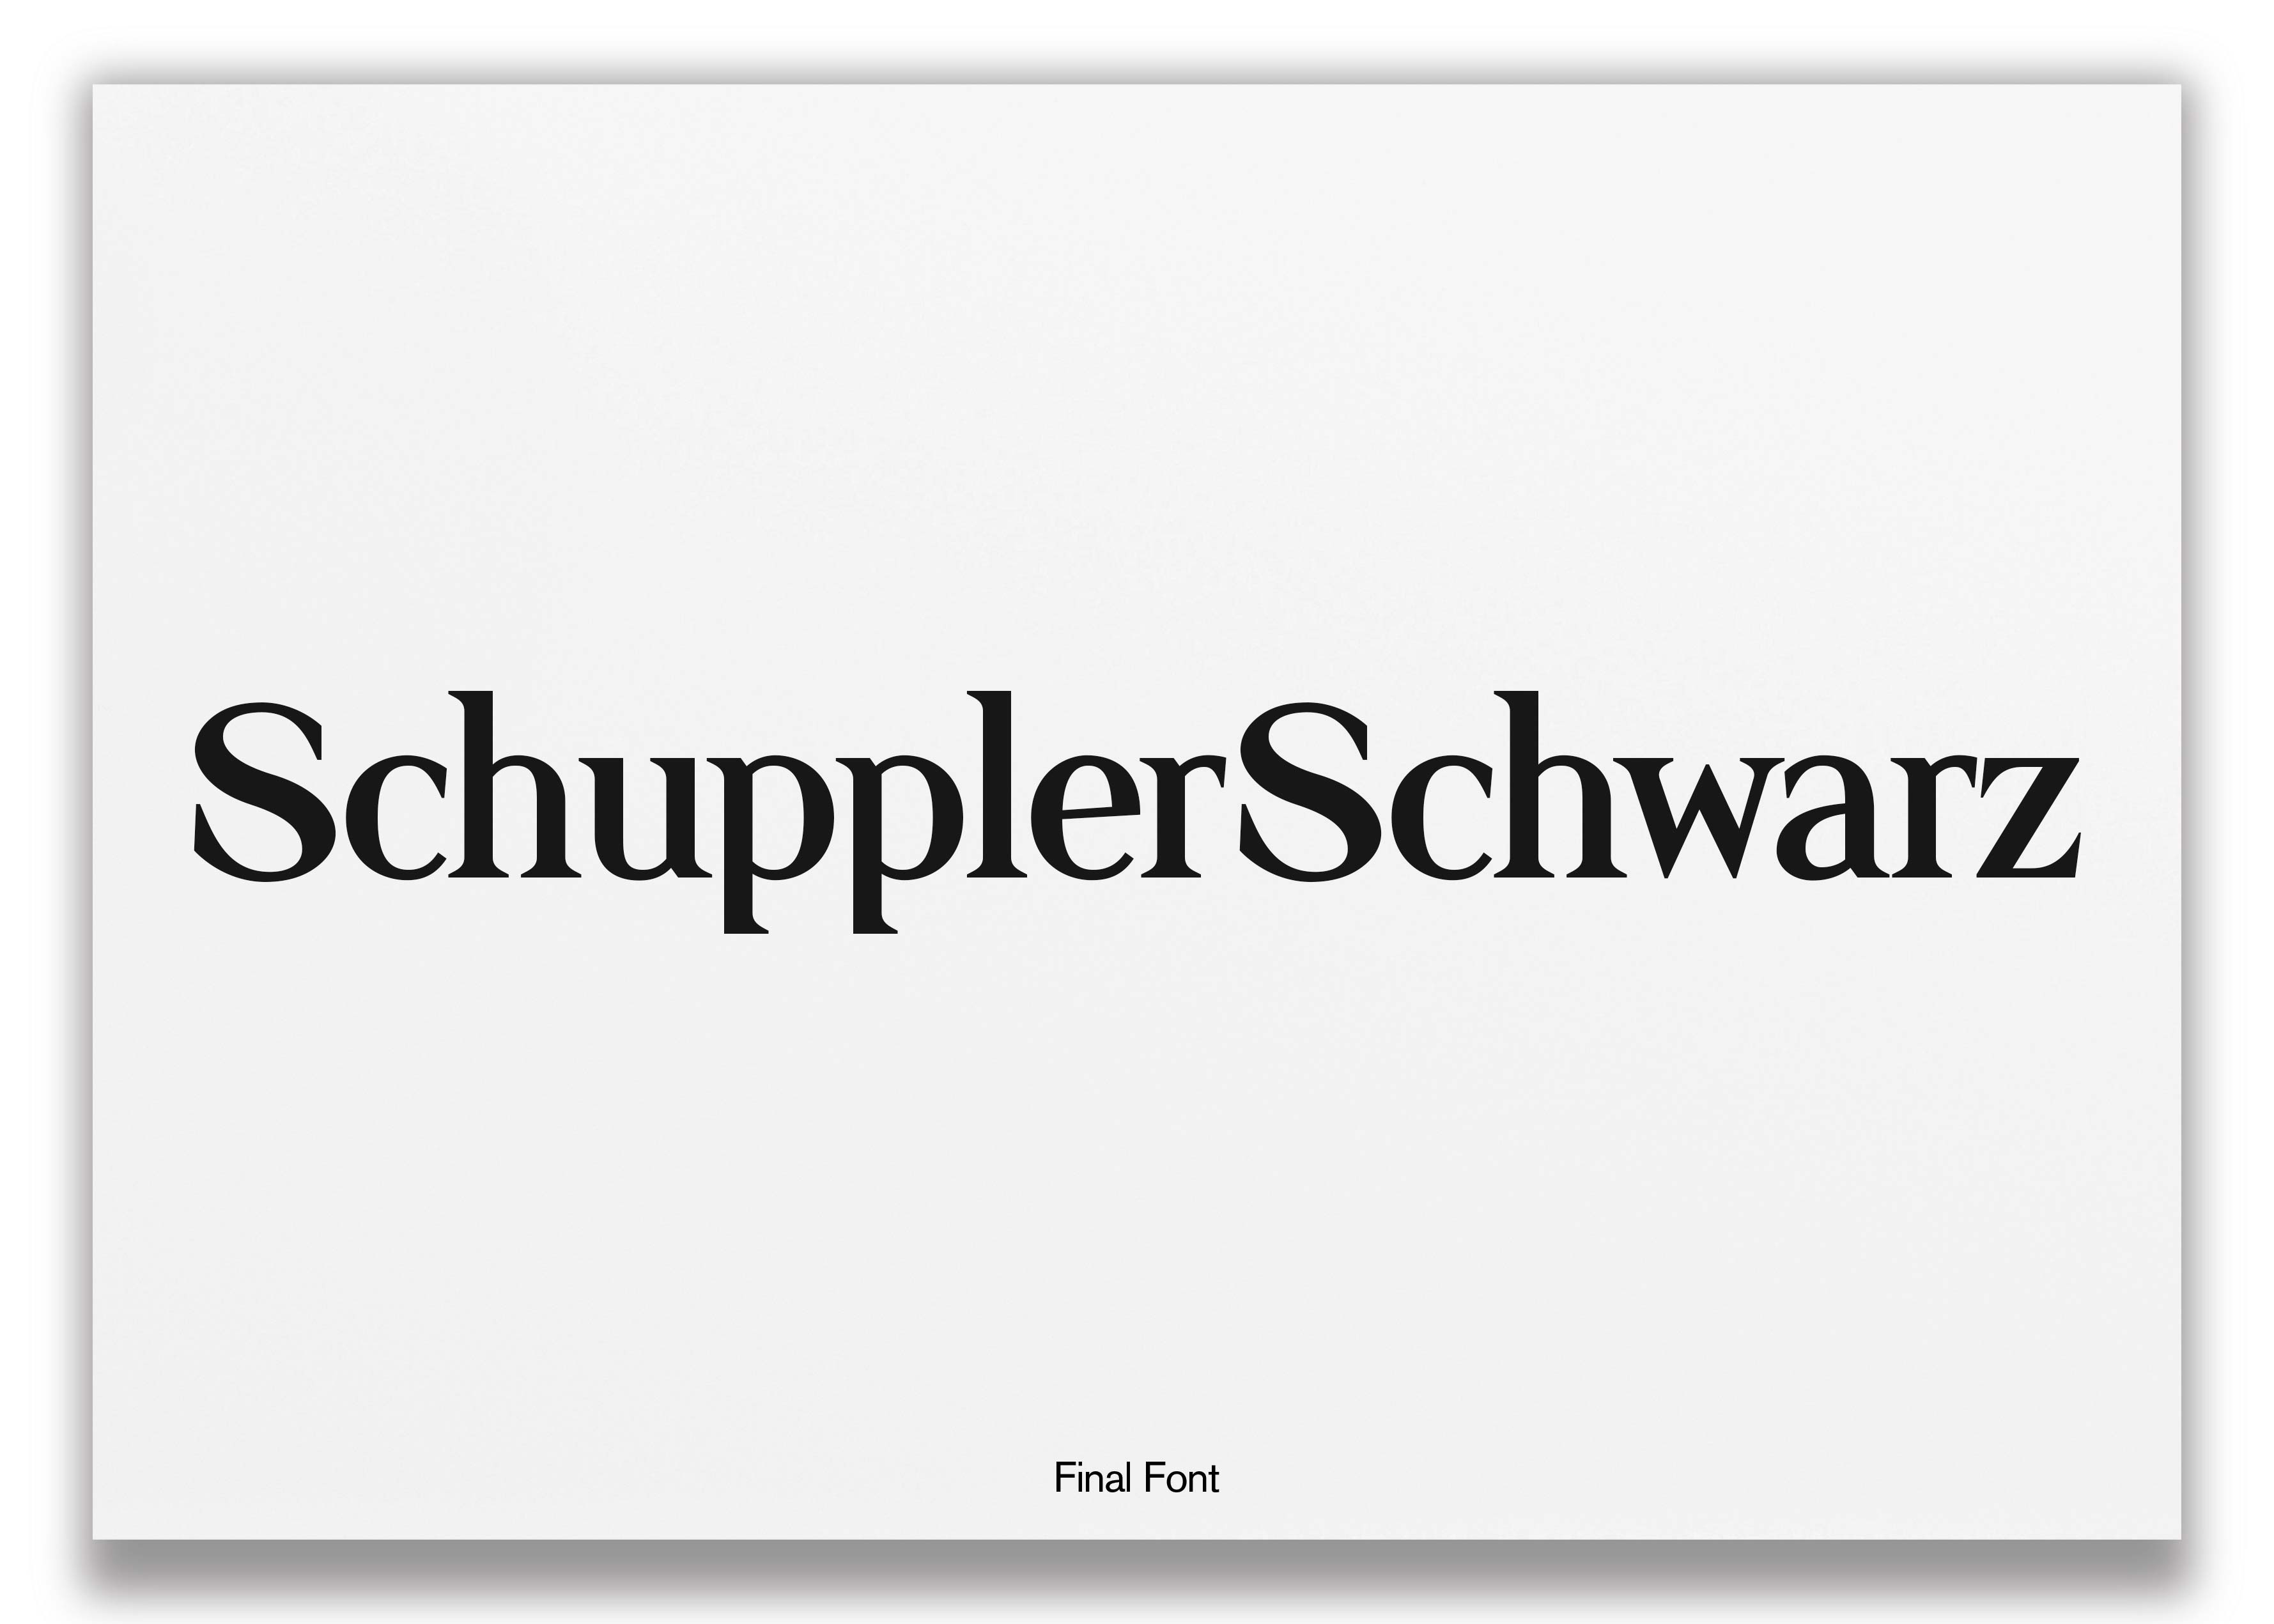 SchupperSchwarz-Logosheet-Final-Logo-Font-web